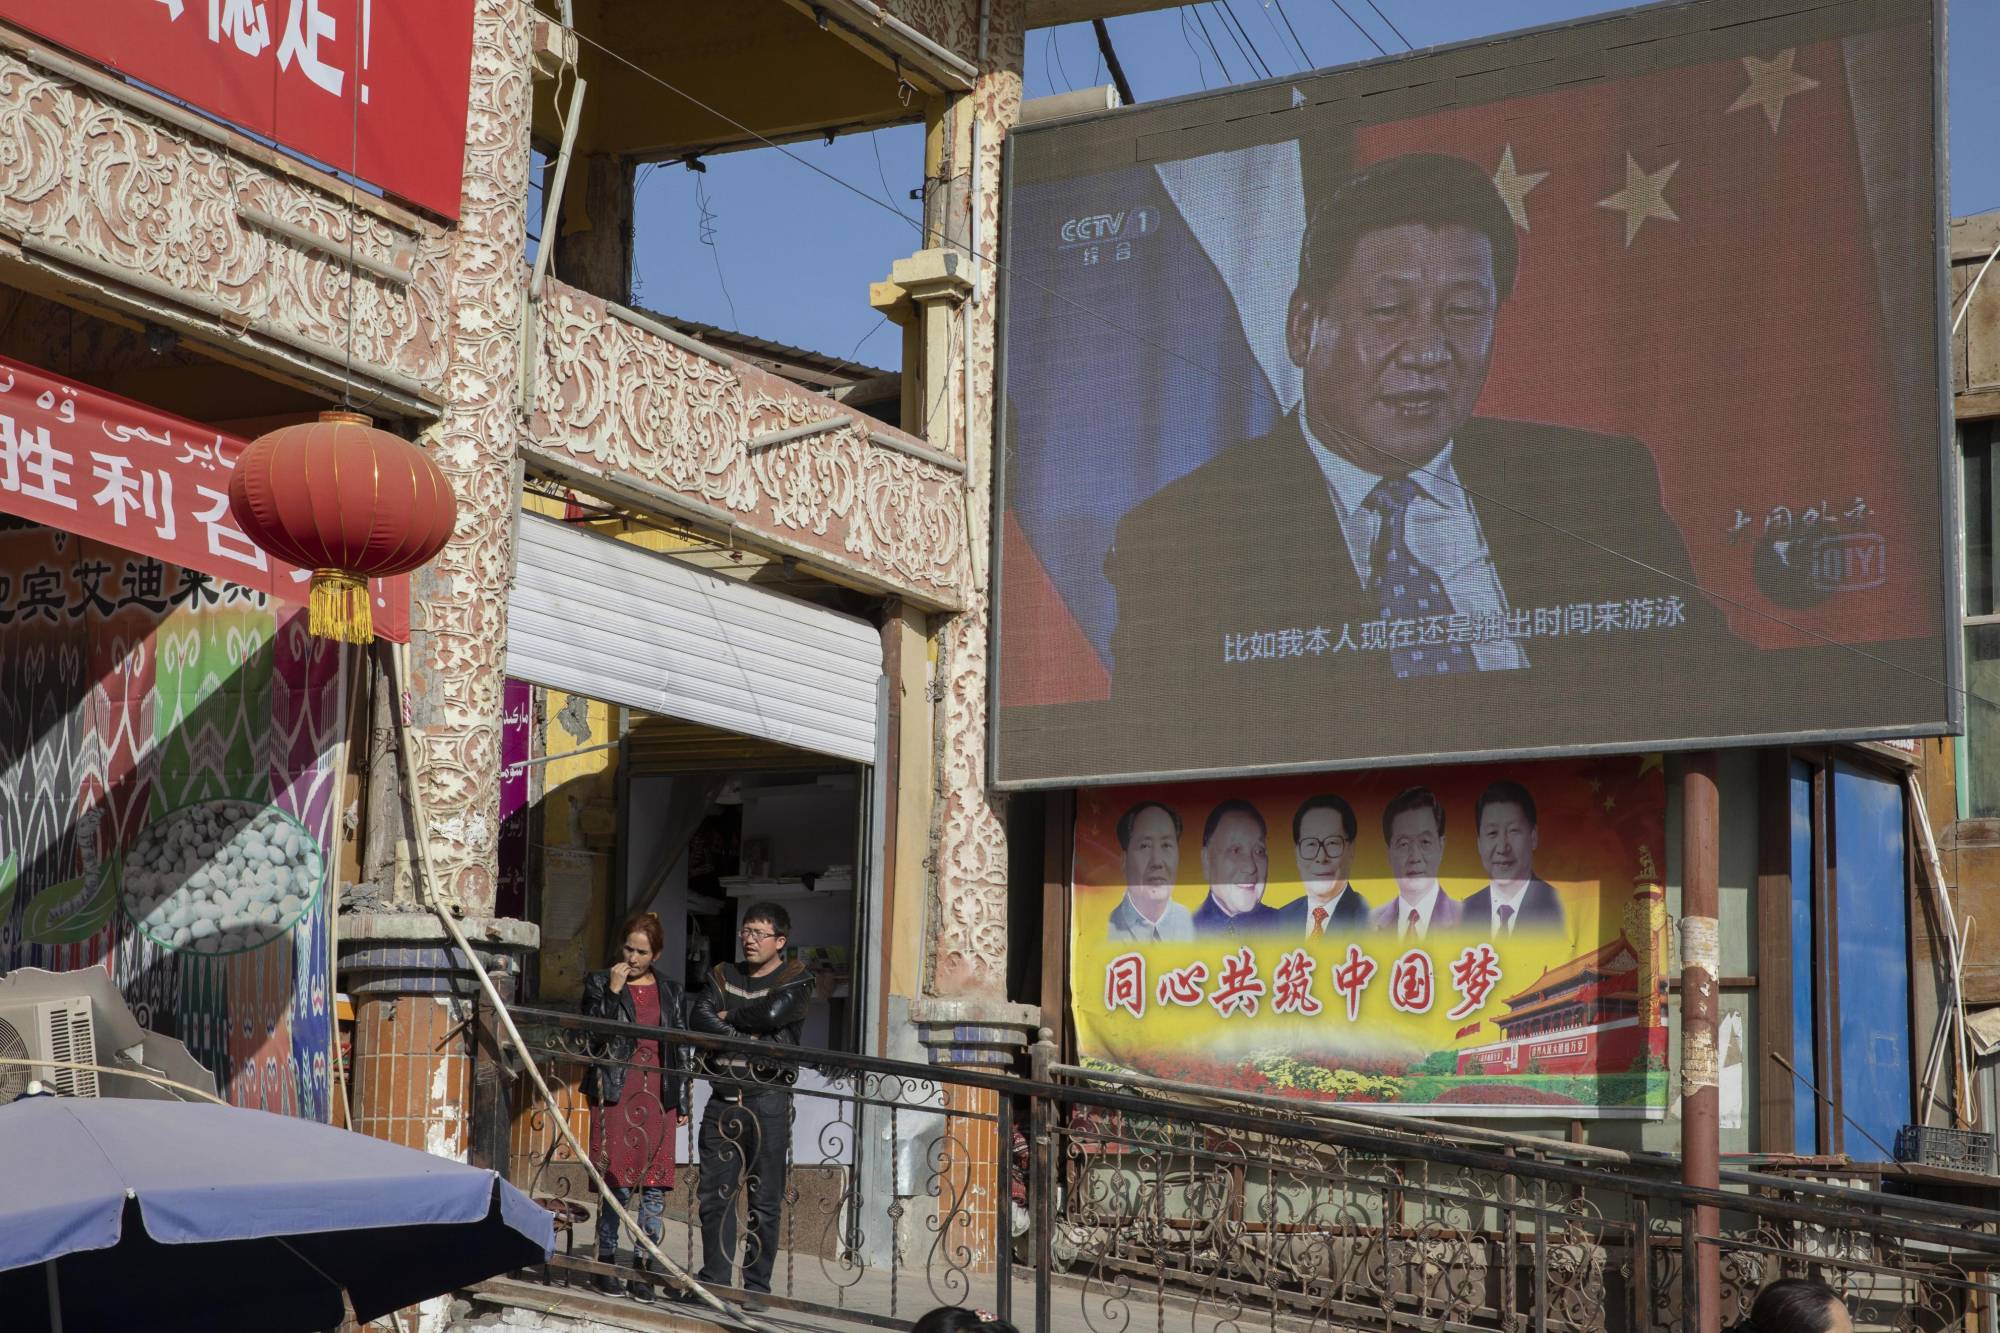 Chinese President Xi Jinping on a monitor in China's Xinjiang Uighur Autonomous Region | AP VIA KYODO